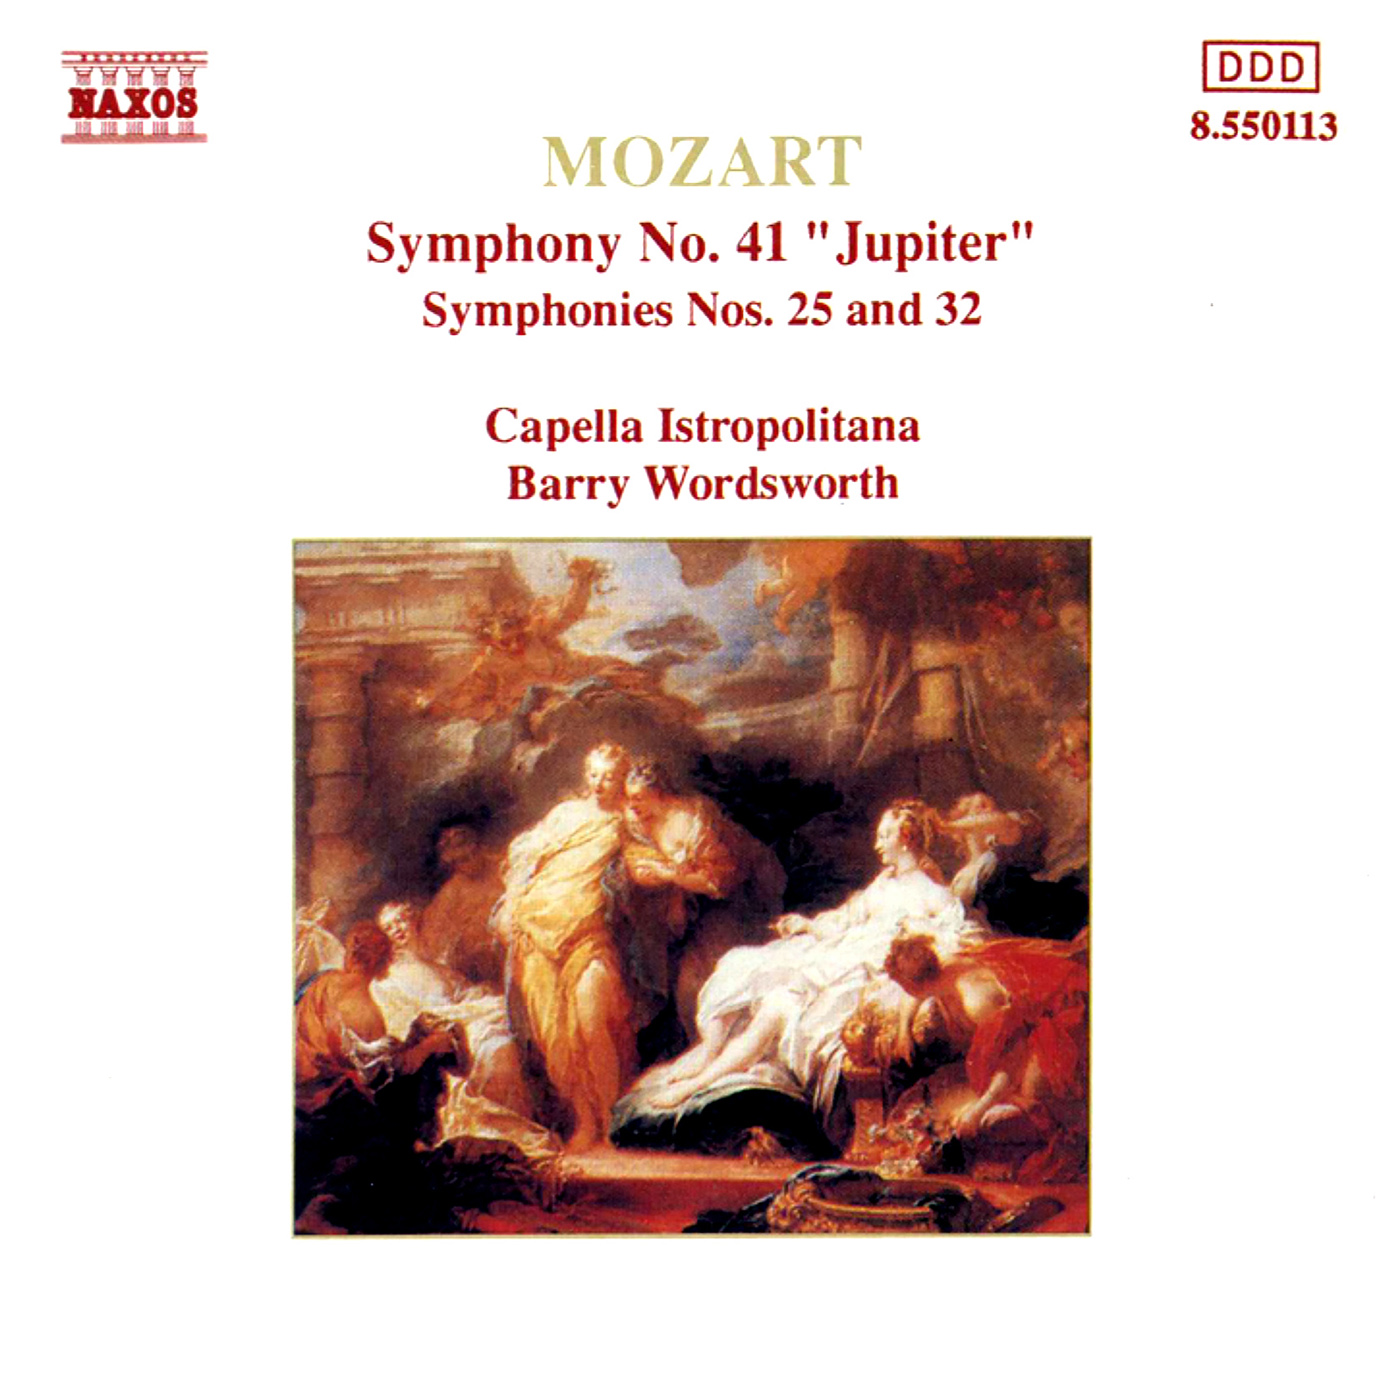 Symphony No. 41 in C Major, K. 551, "Jupiter":I. Allegro vivace